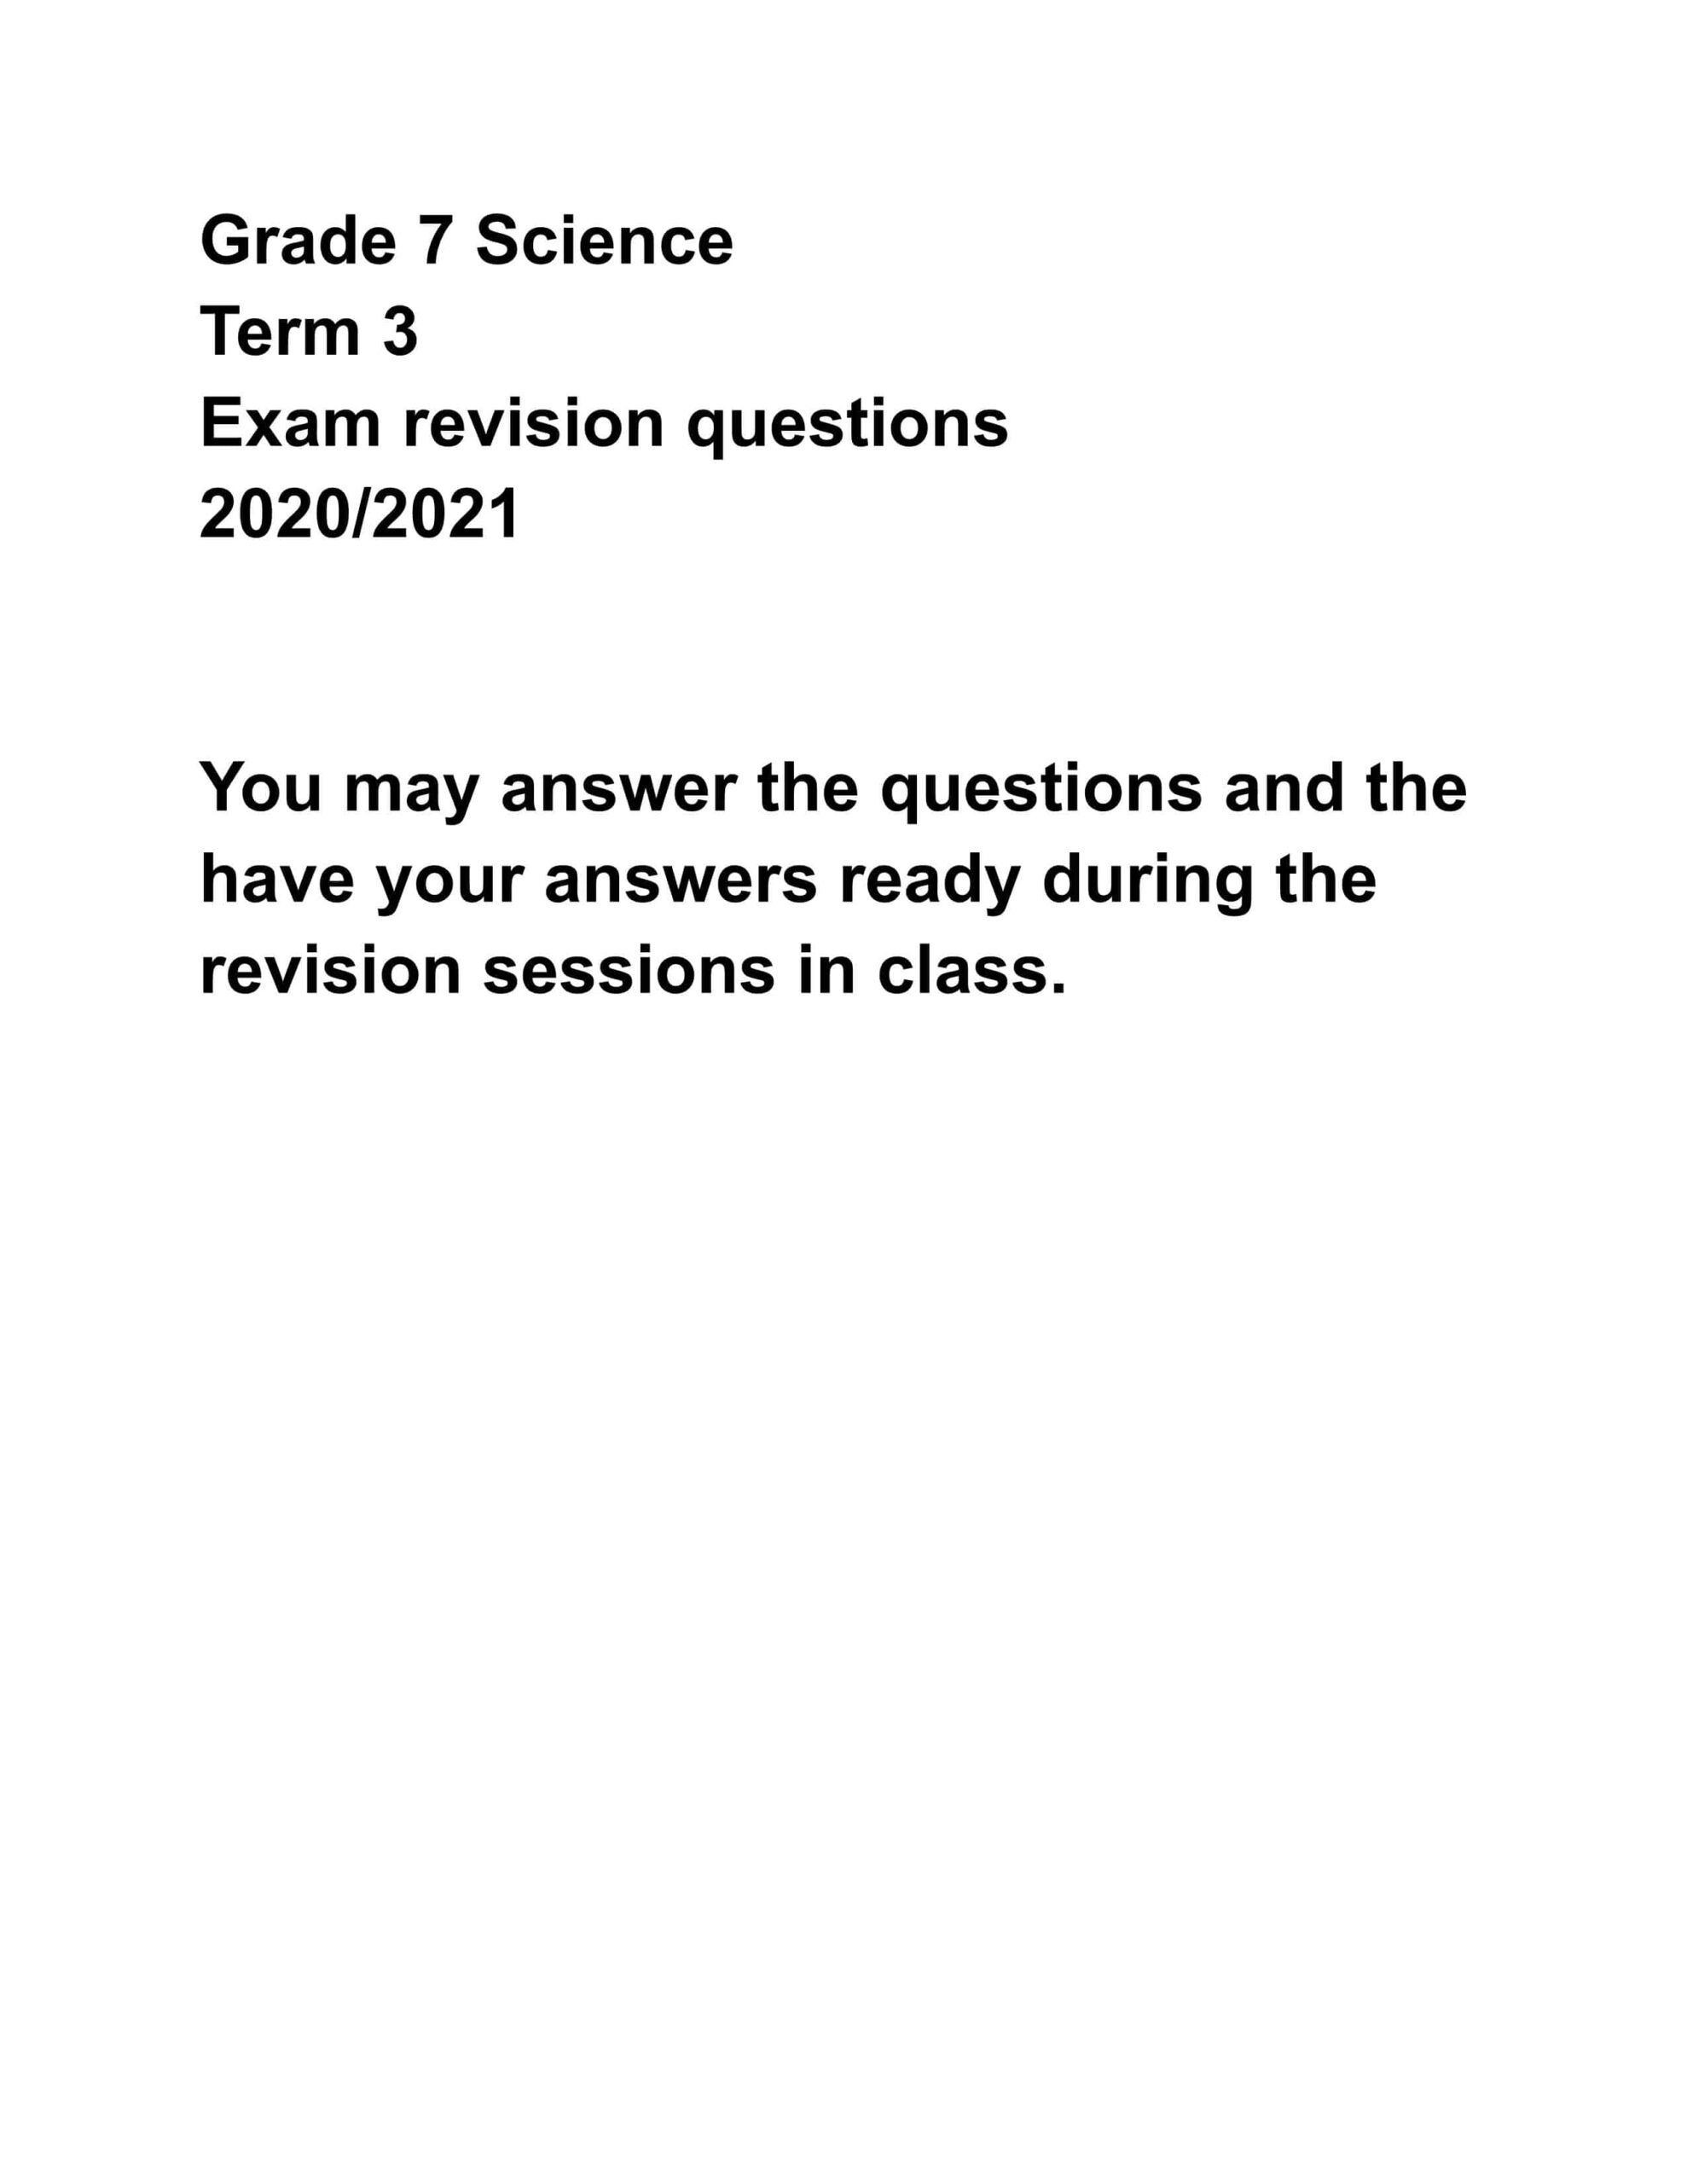 Exam revision questions العلوم المتكاملة الصف السابع